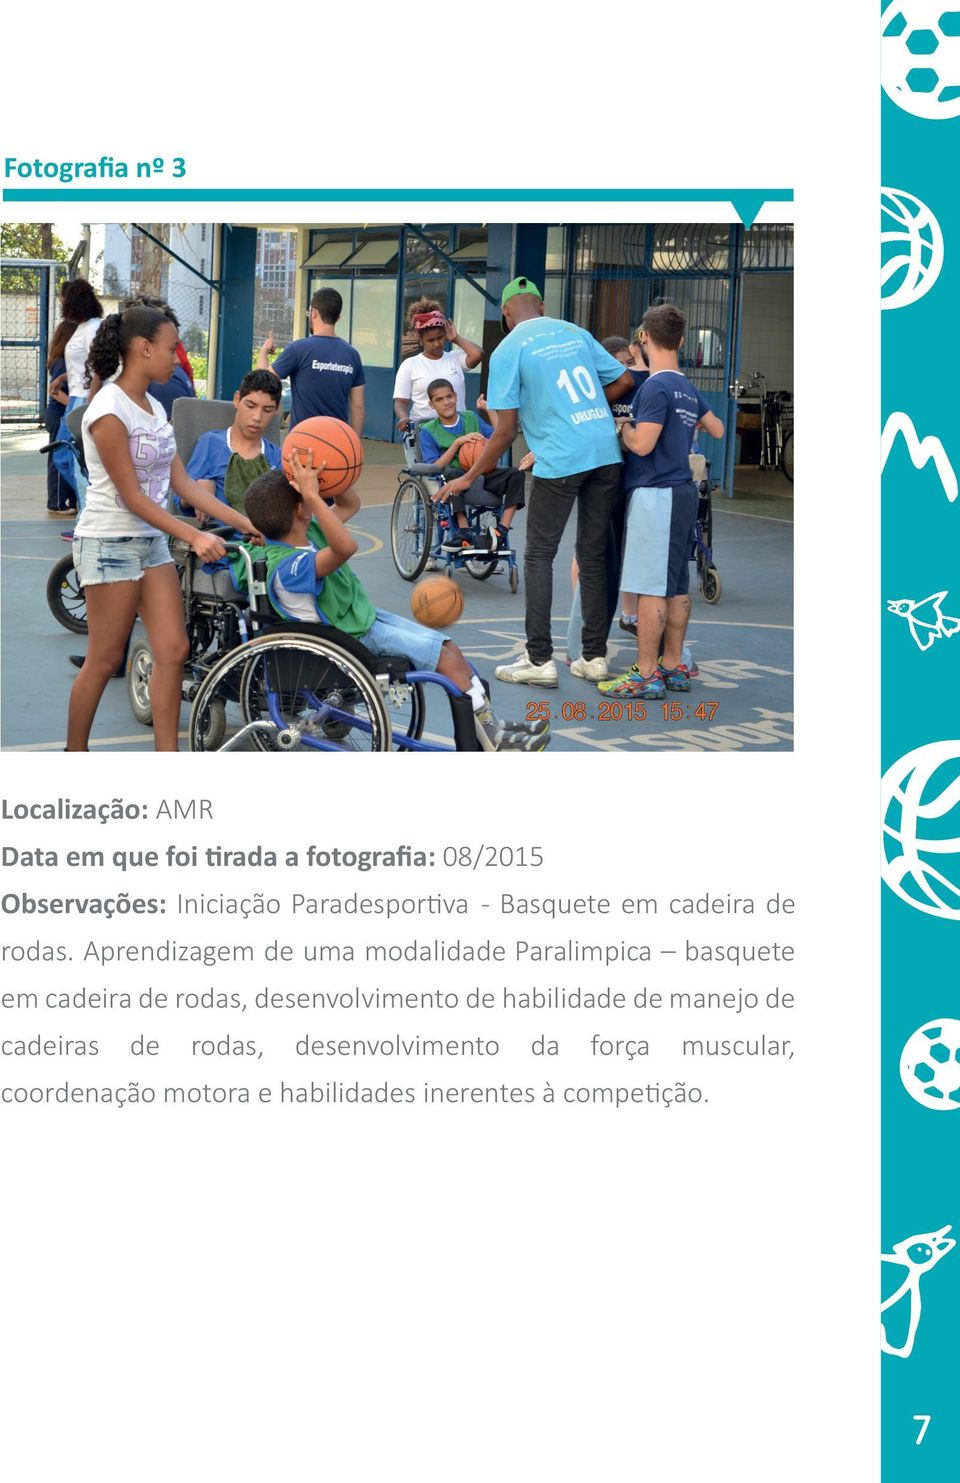 Aprendizagem de uma modalidade Paralimpica basquete em cadeira de rodas, desenvolvimento